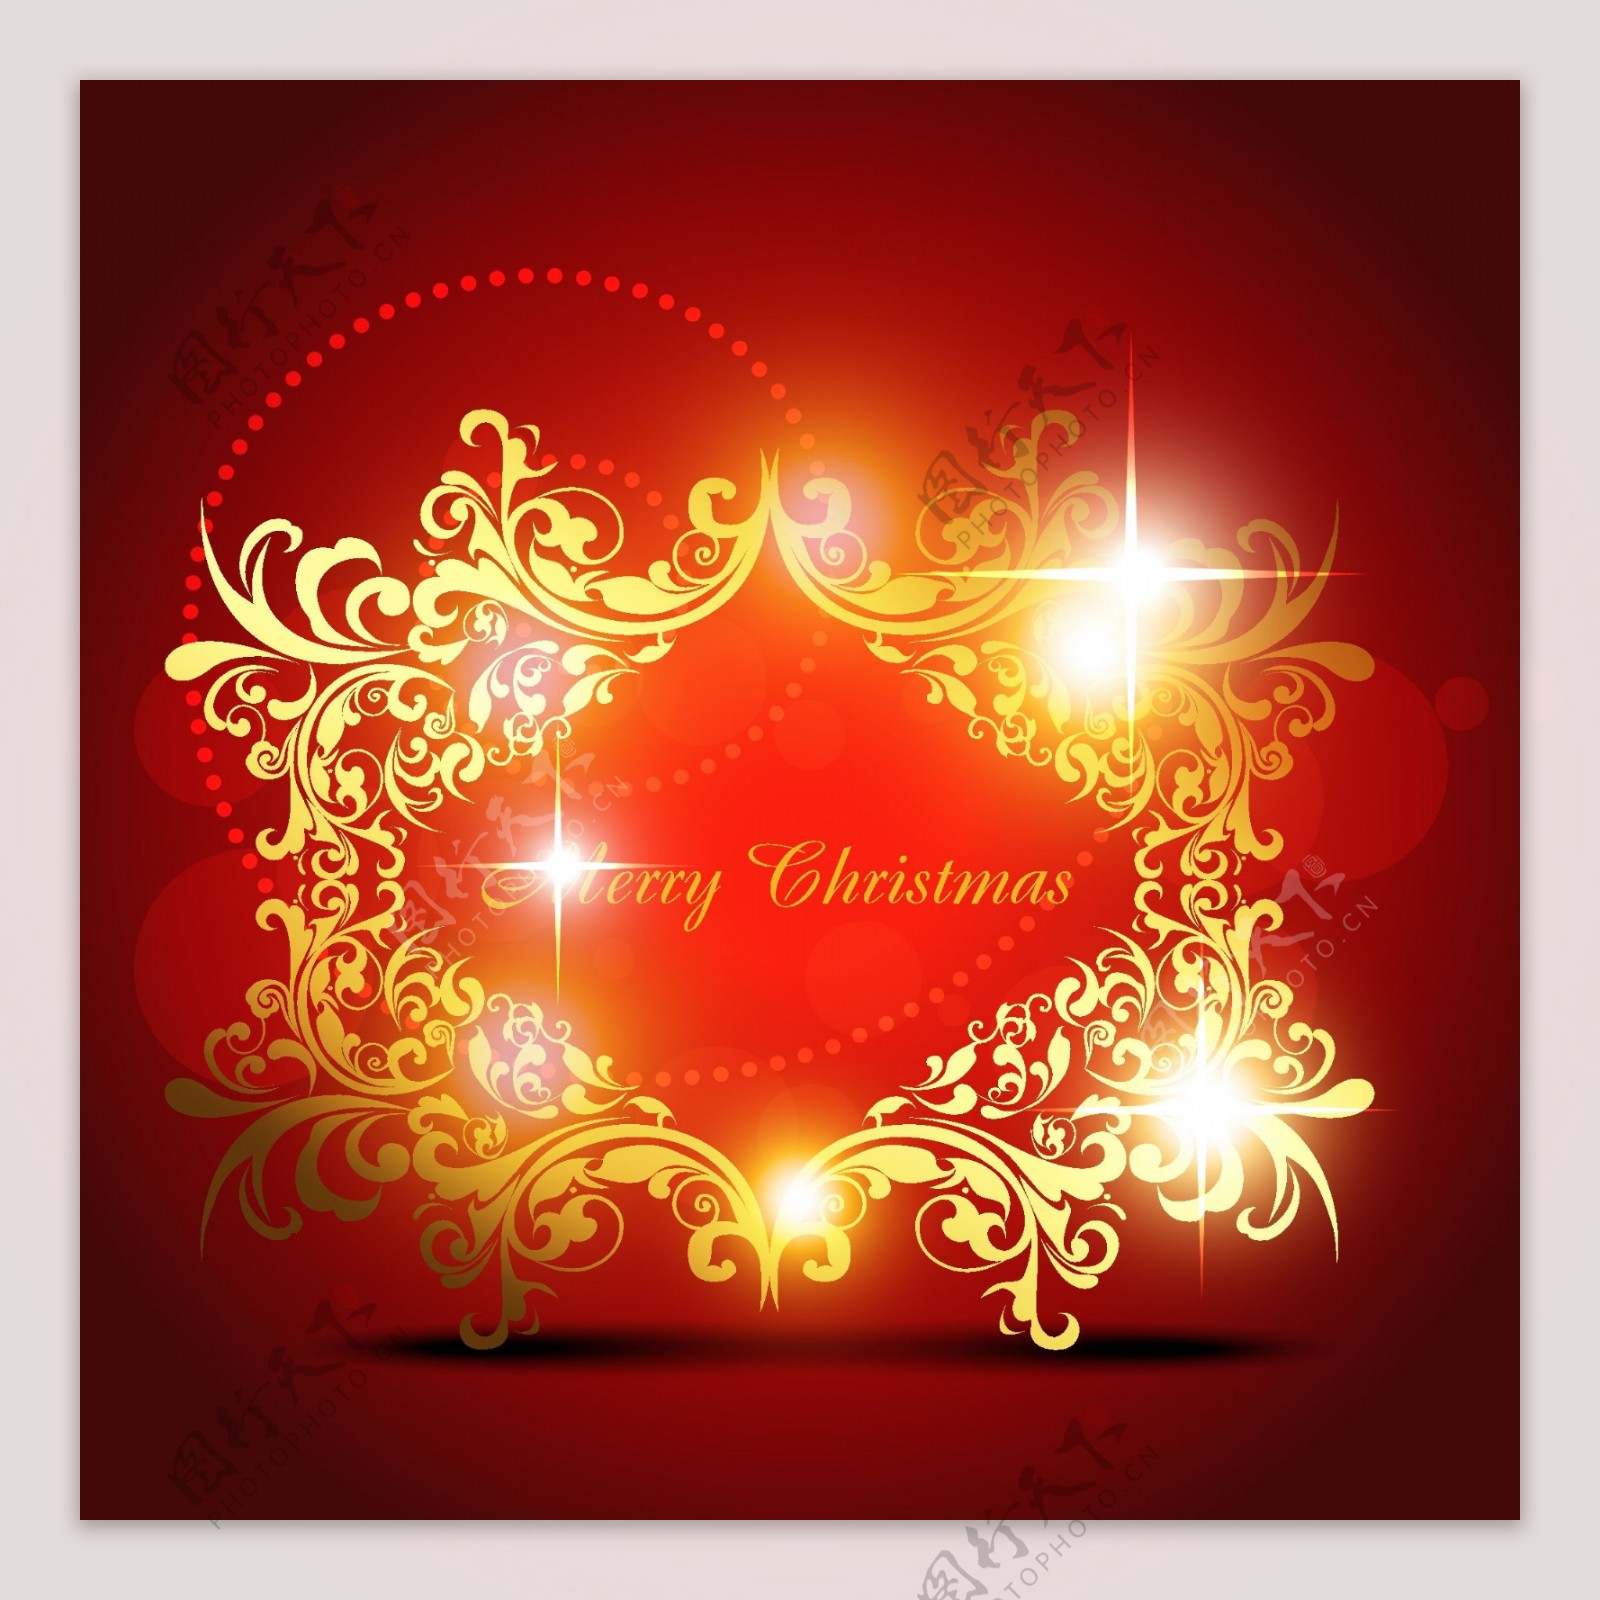 红色背景爱的礼赞圣诞节活动海报